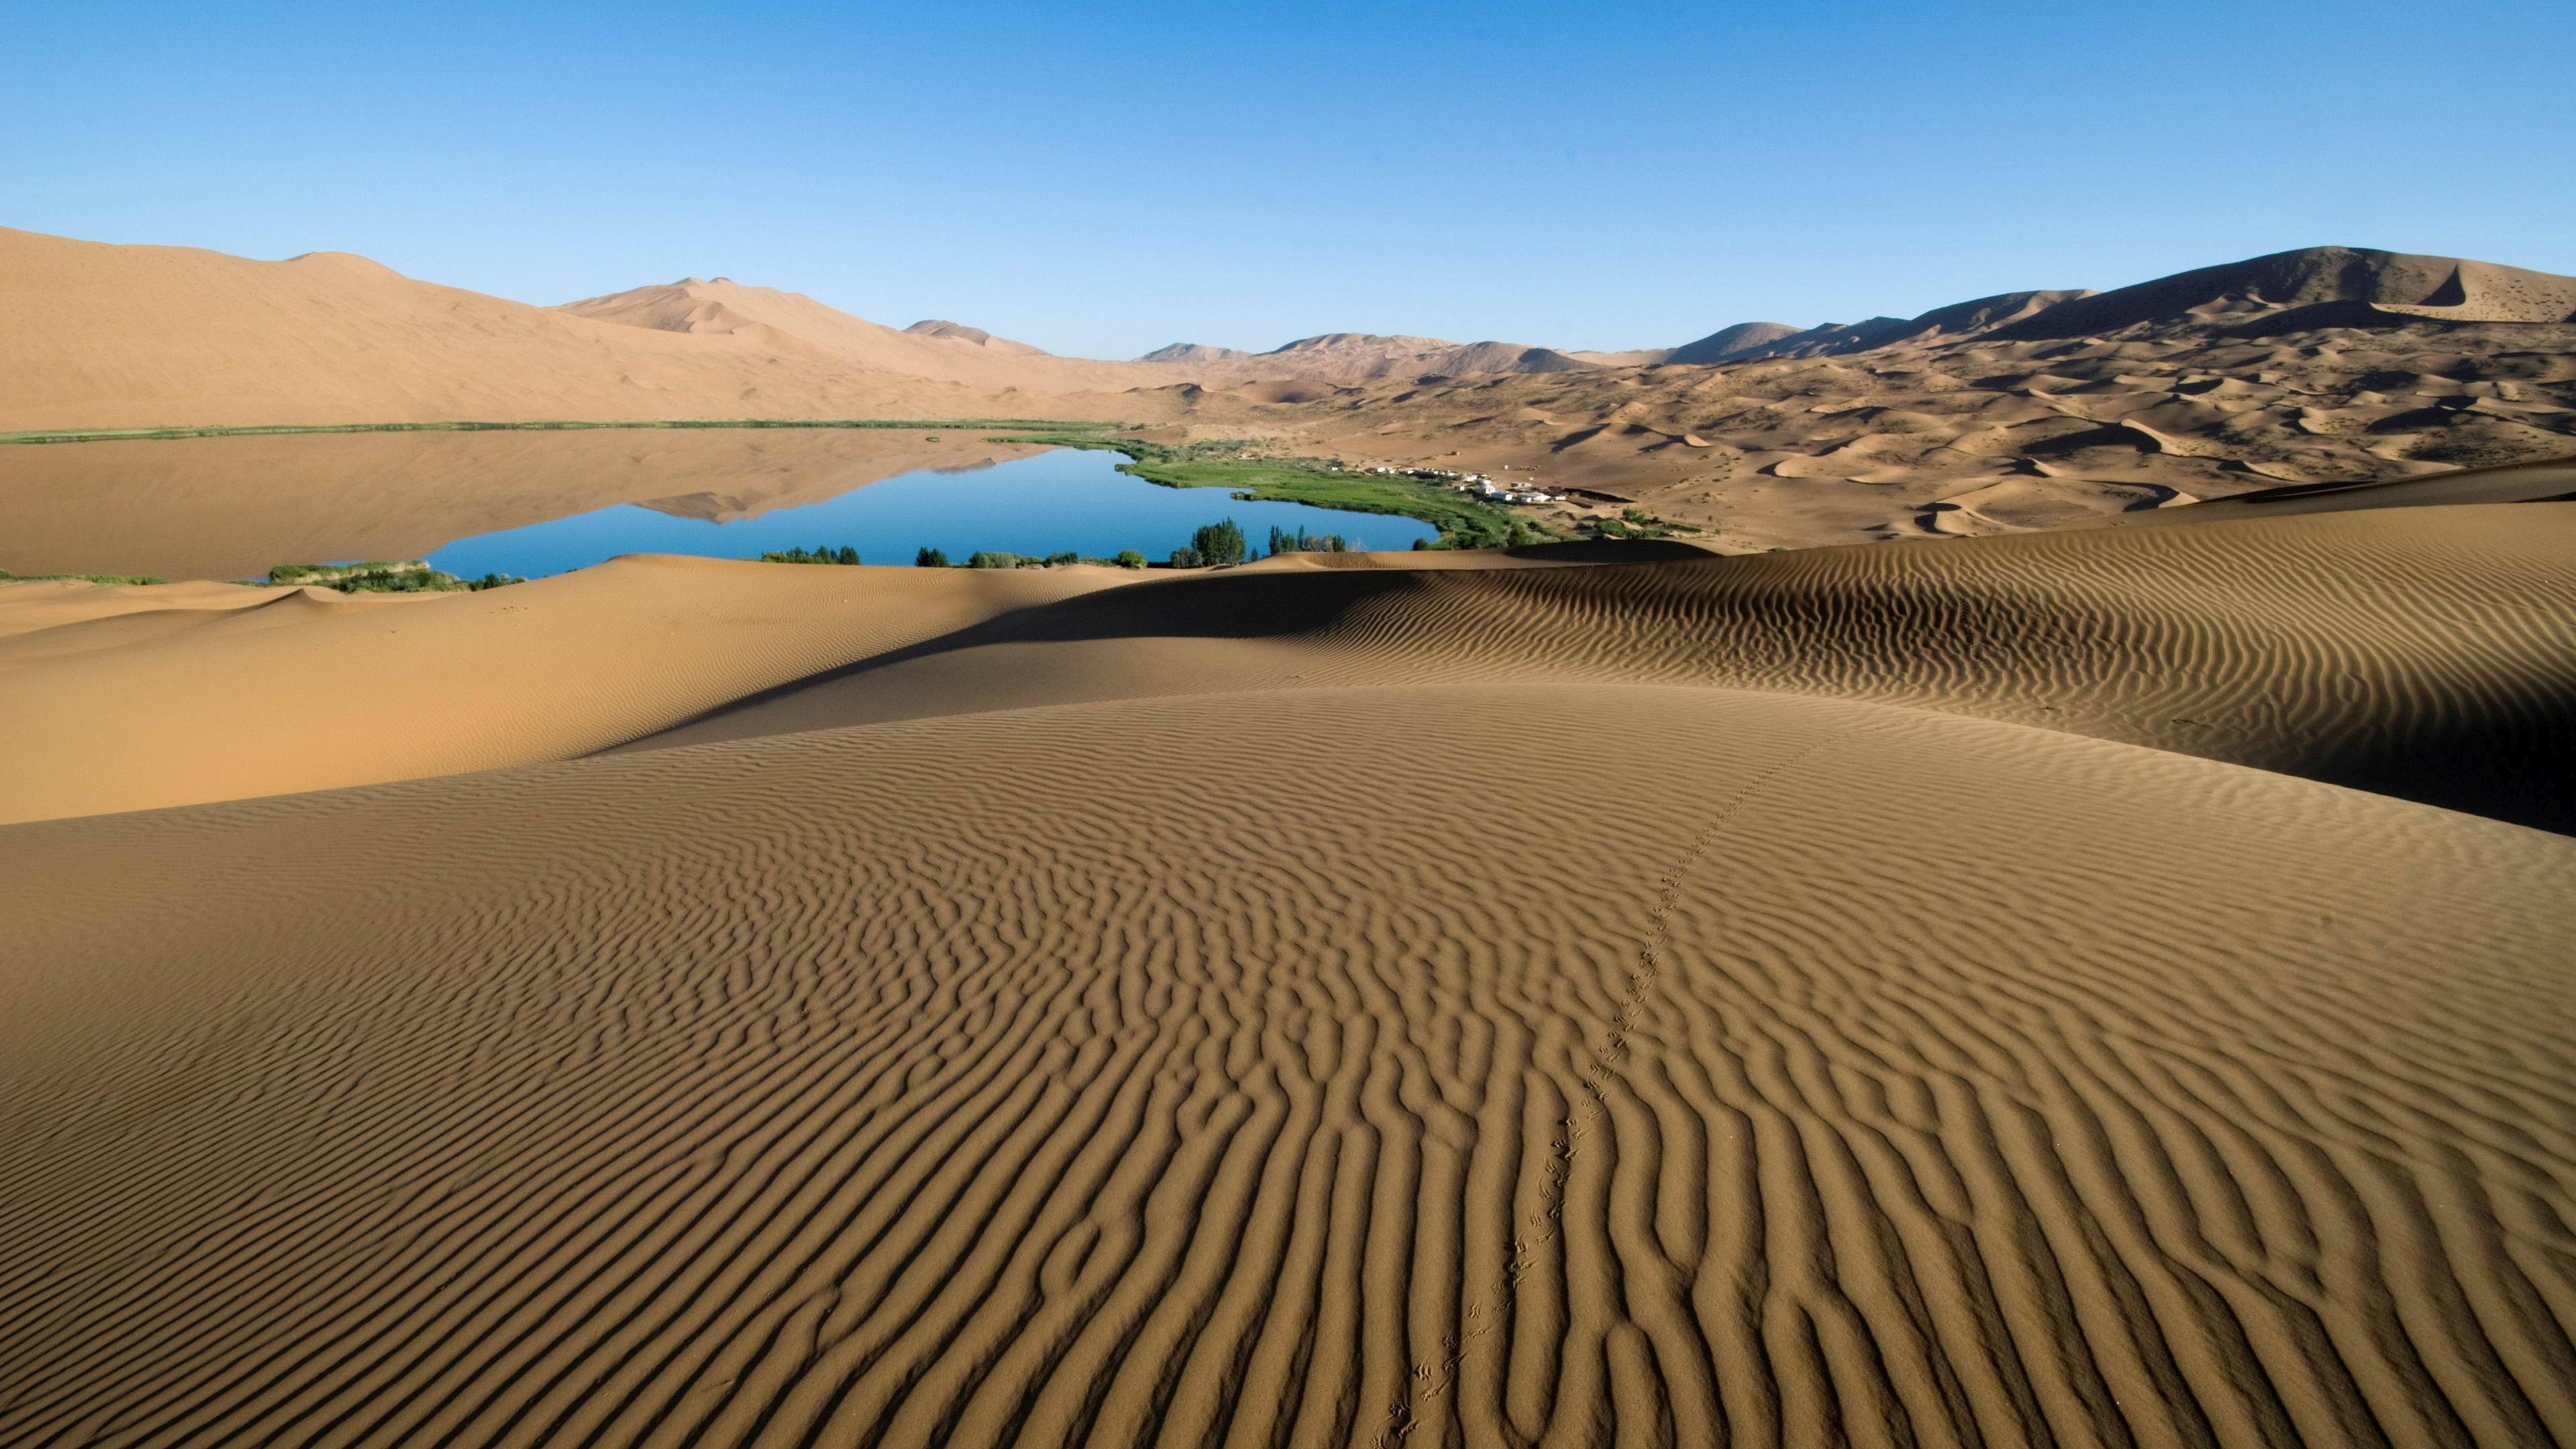 Desert Oasis Landscape Widescreen Wallpaper 50089 3840x2160px